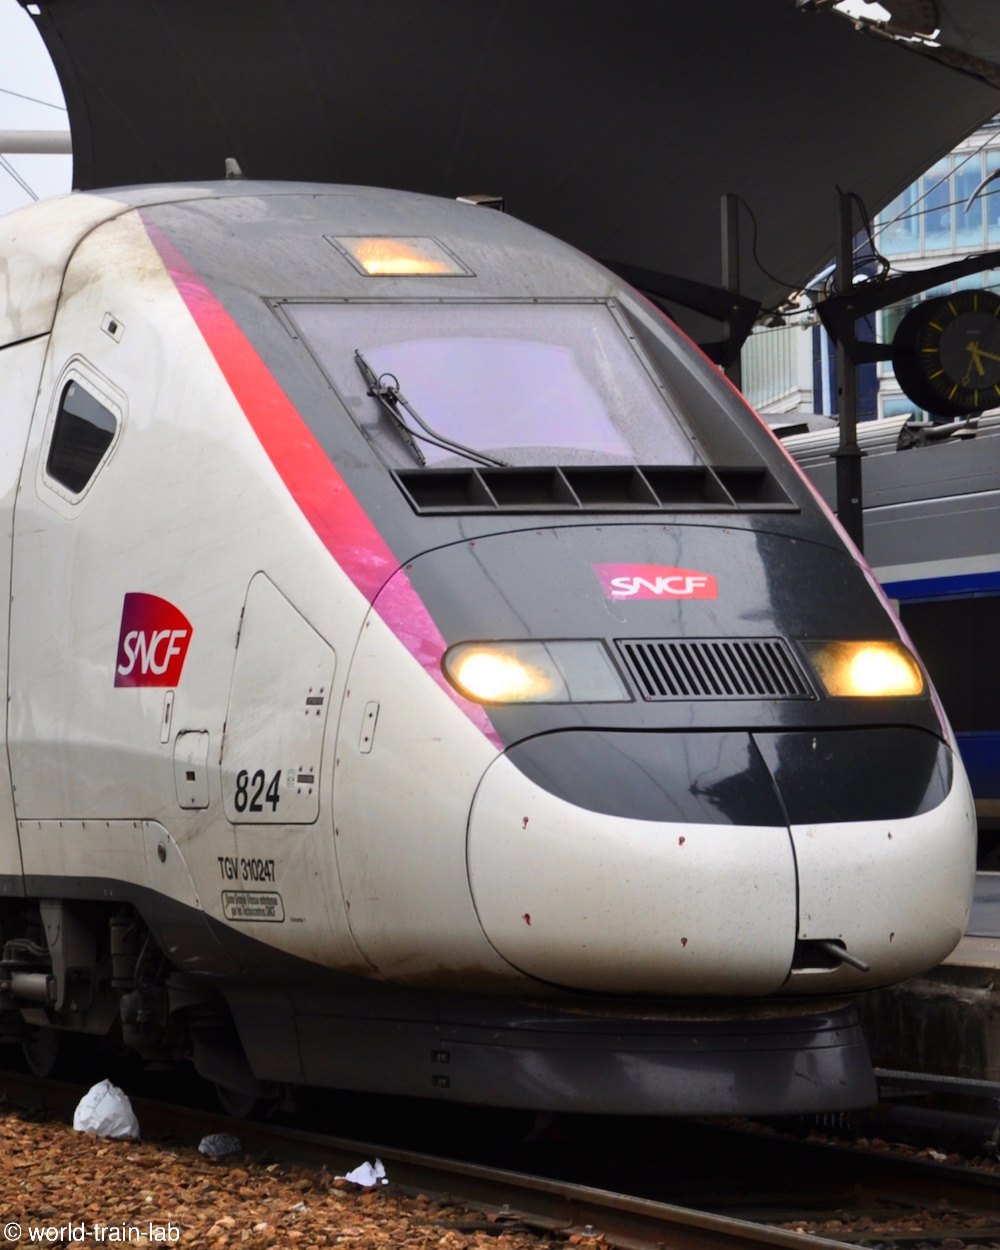 フランス国鉄が運行する新幹線 TGV